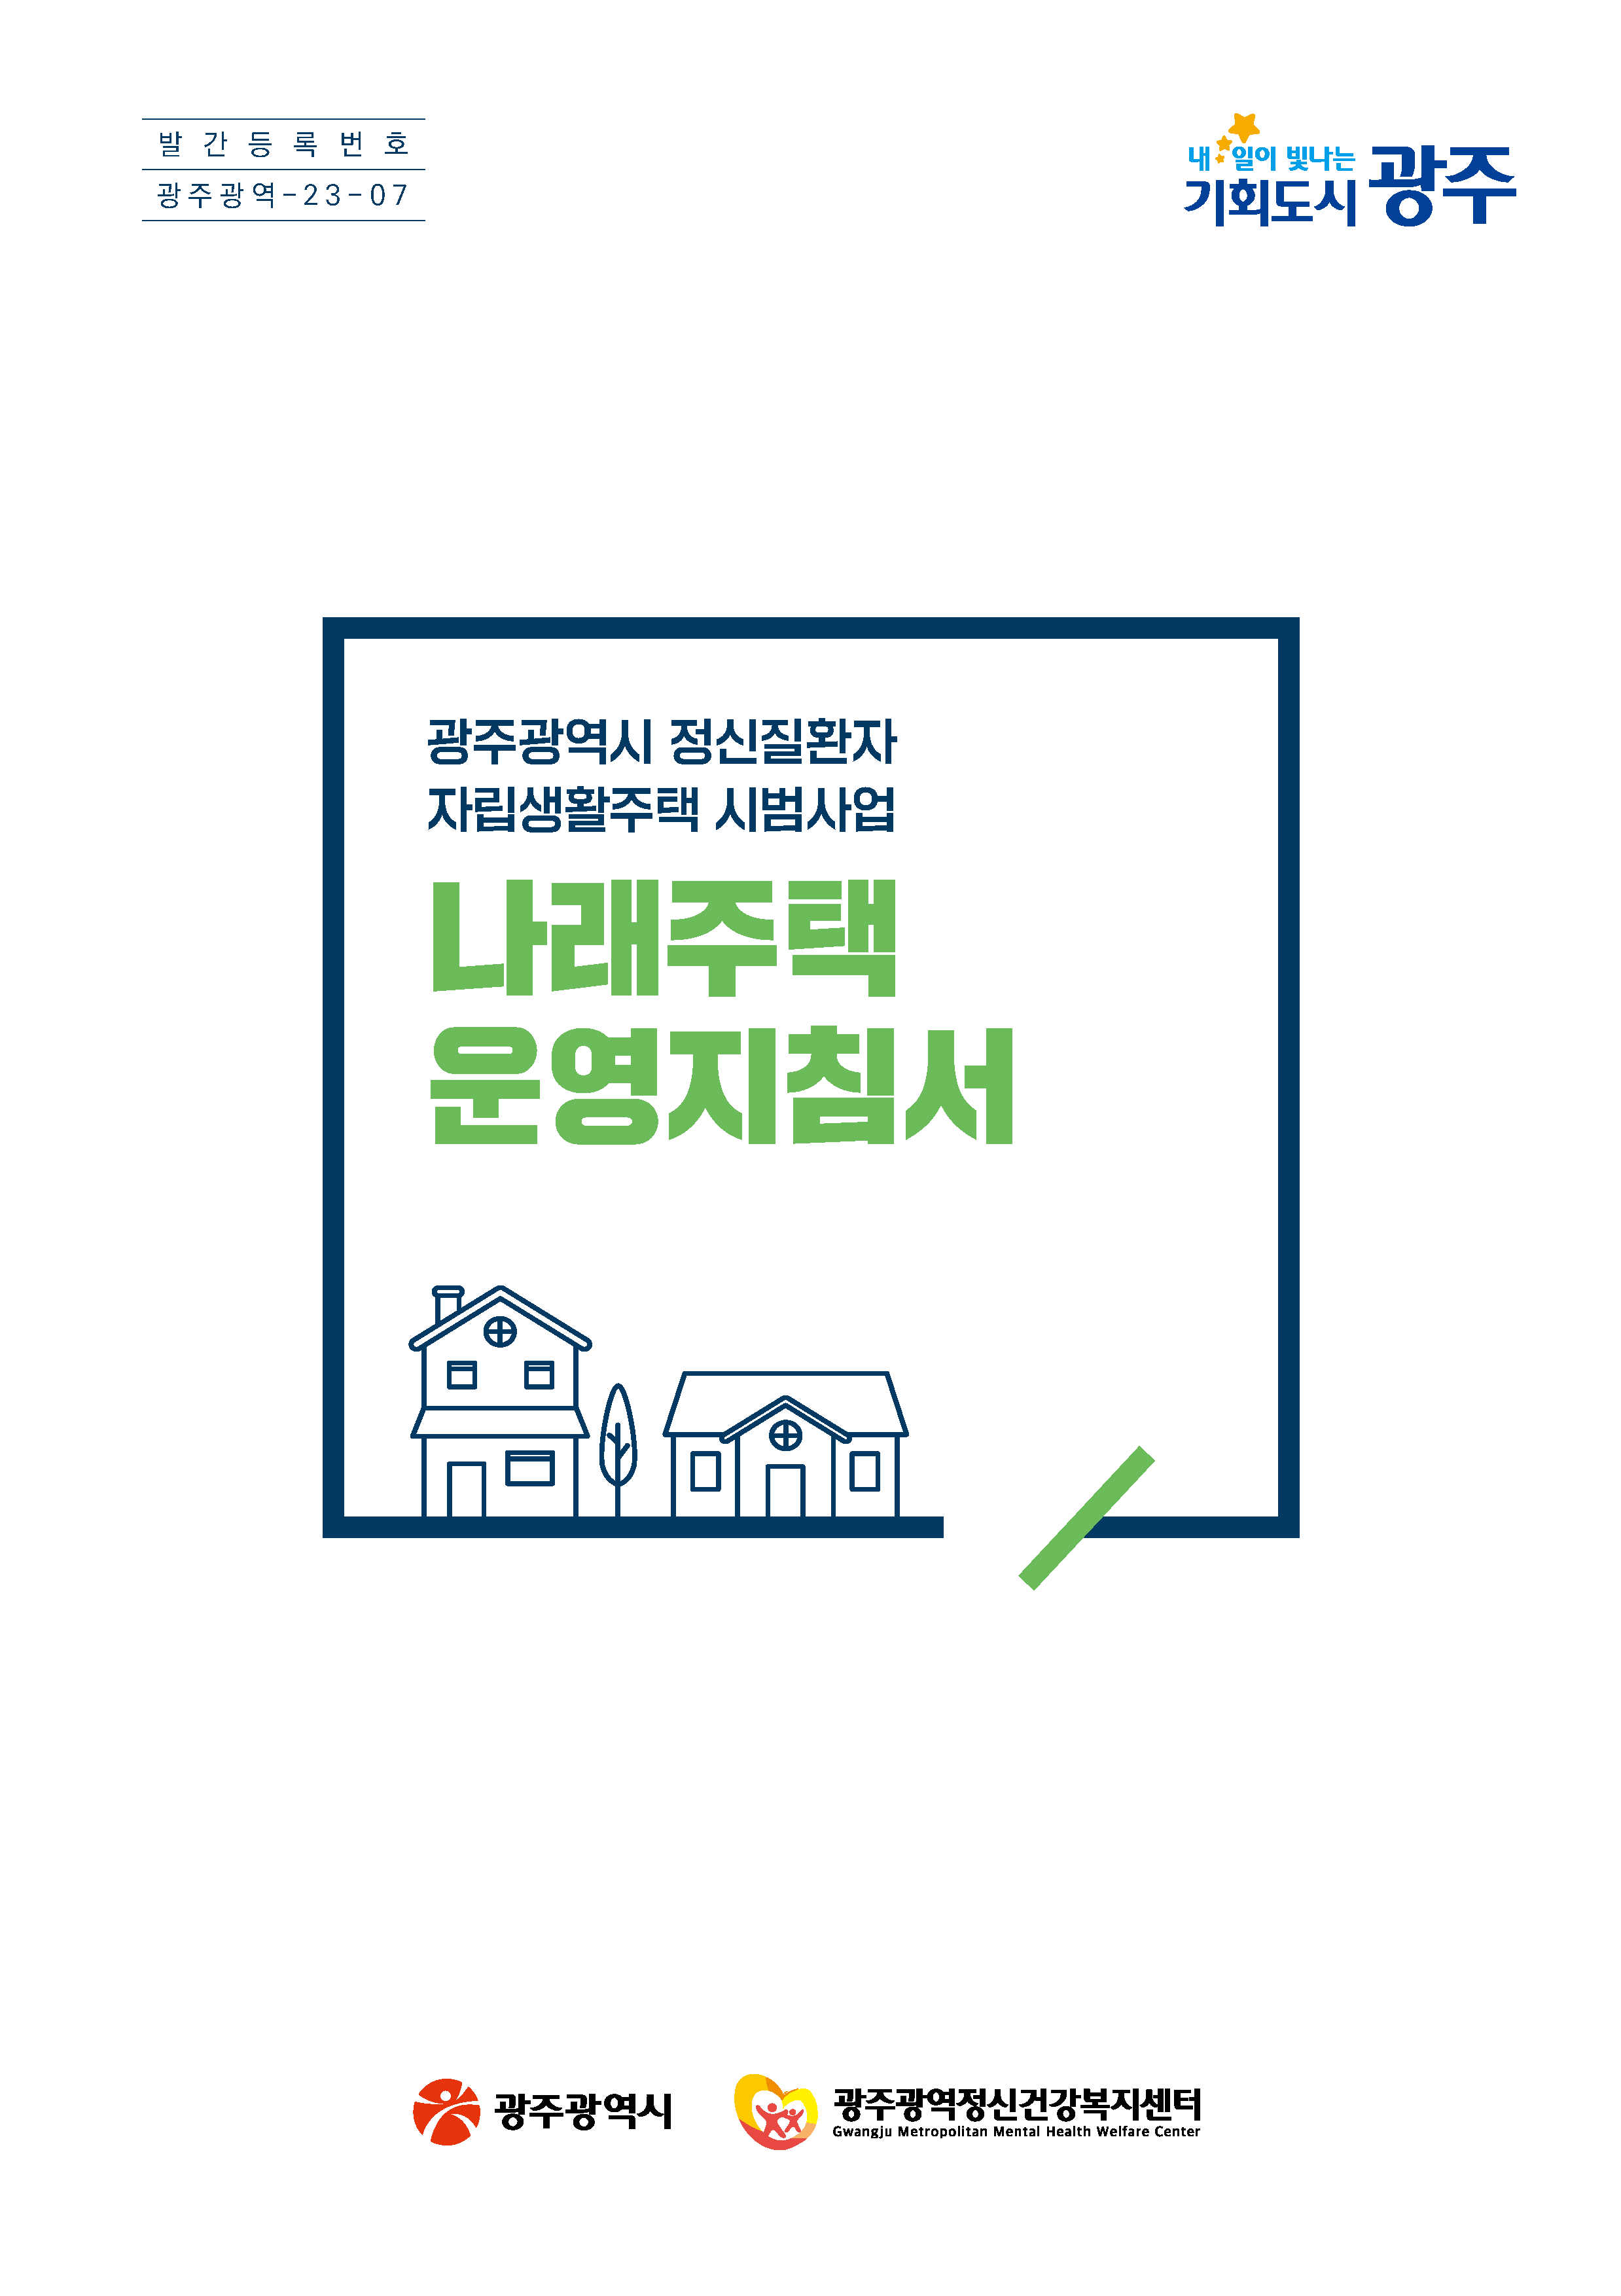 광주광역시 정신질환자 자립생활주택 시범사업 나래주택 운영지침서